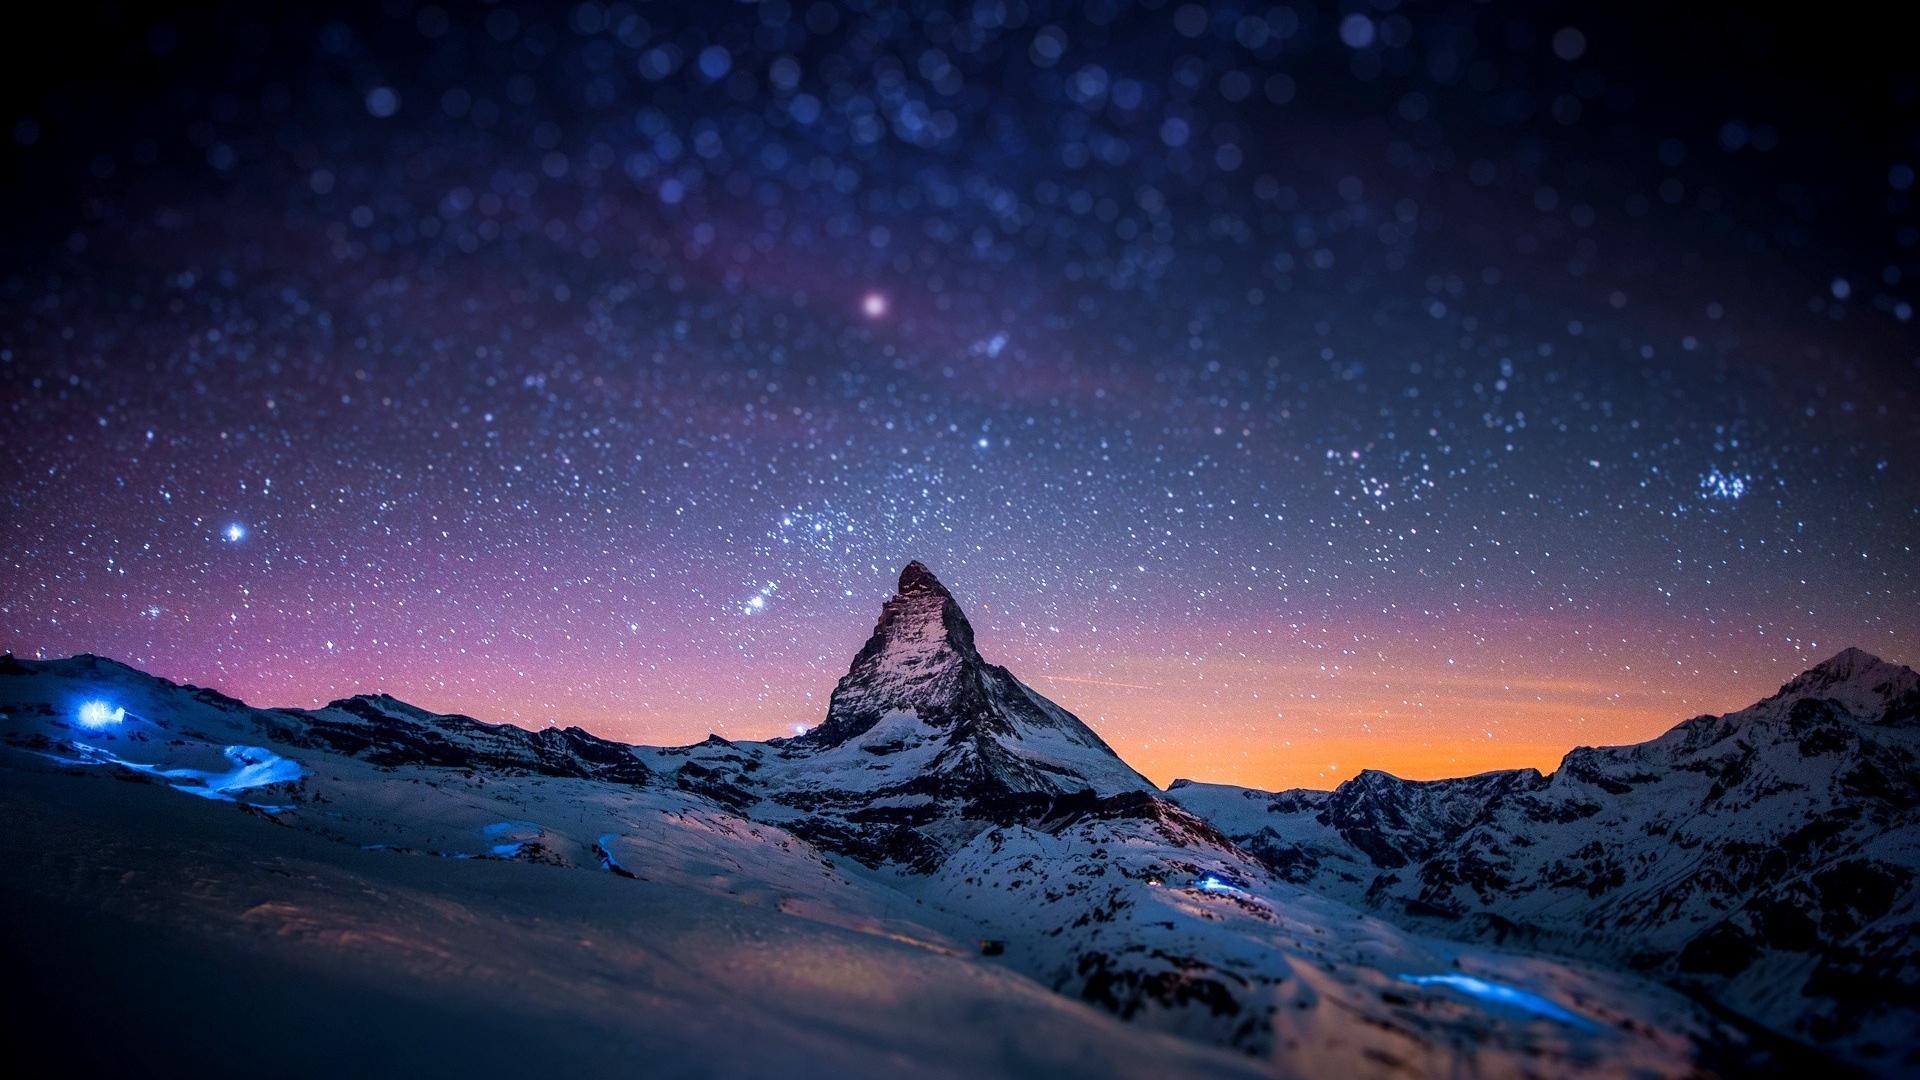 Скачать обои бесплатно Снег, Горы, Ночь, Звезды, Пейзаж картинка на рабочий стол ПК